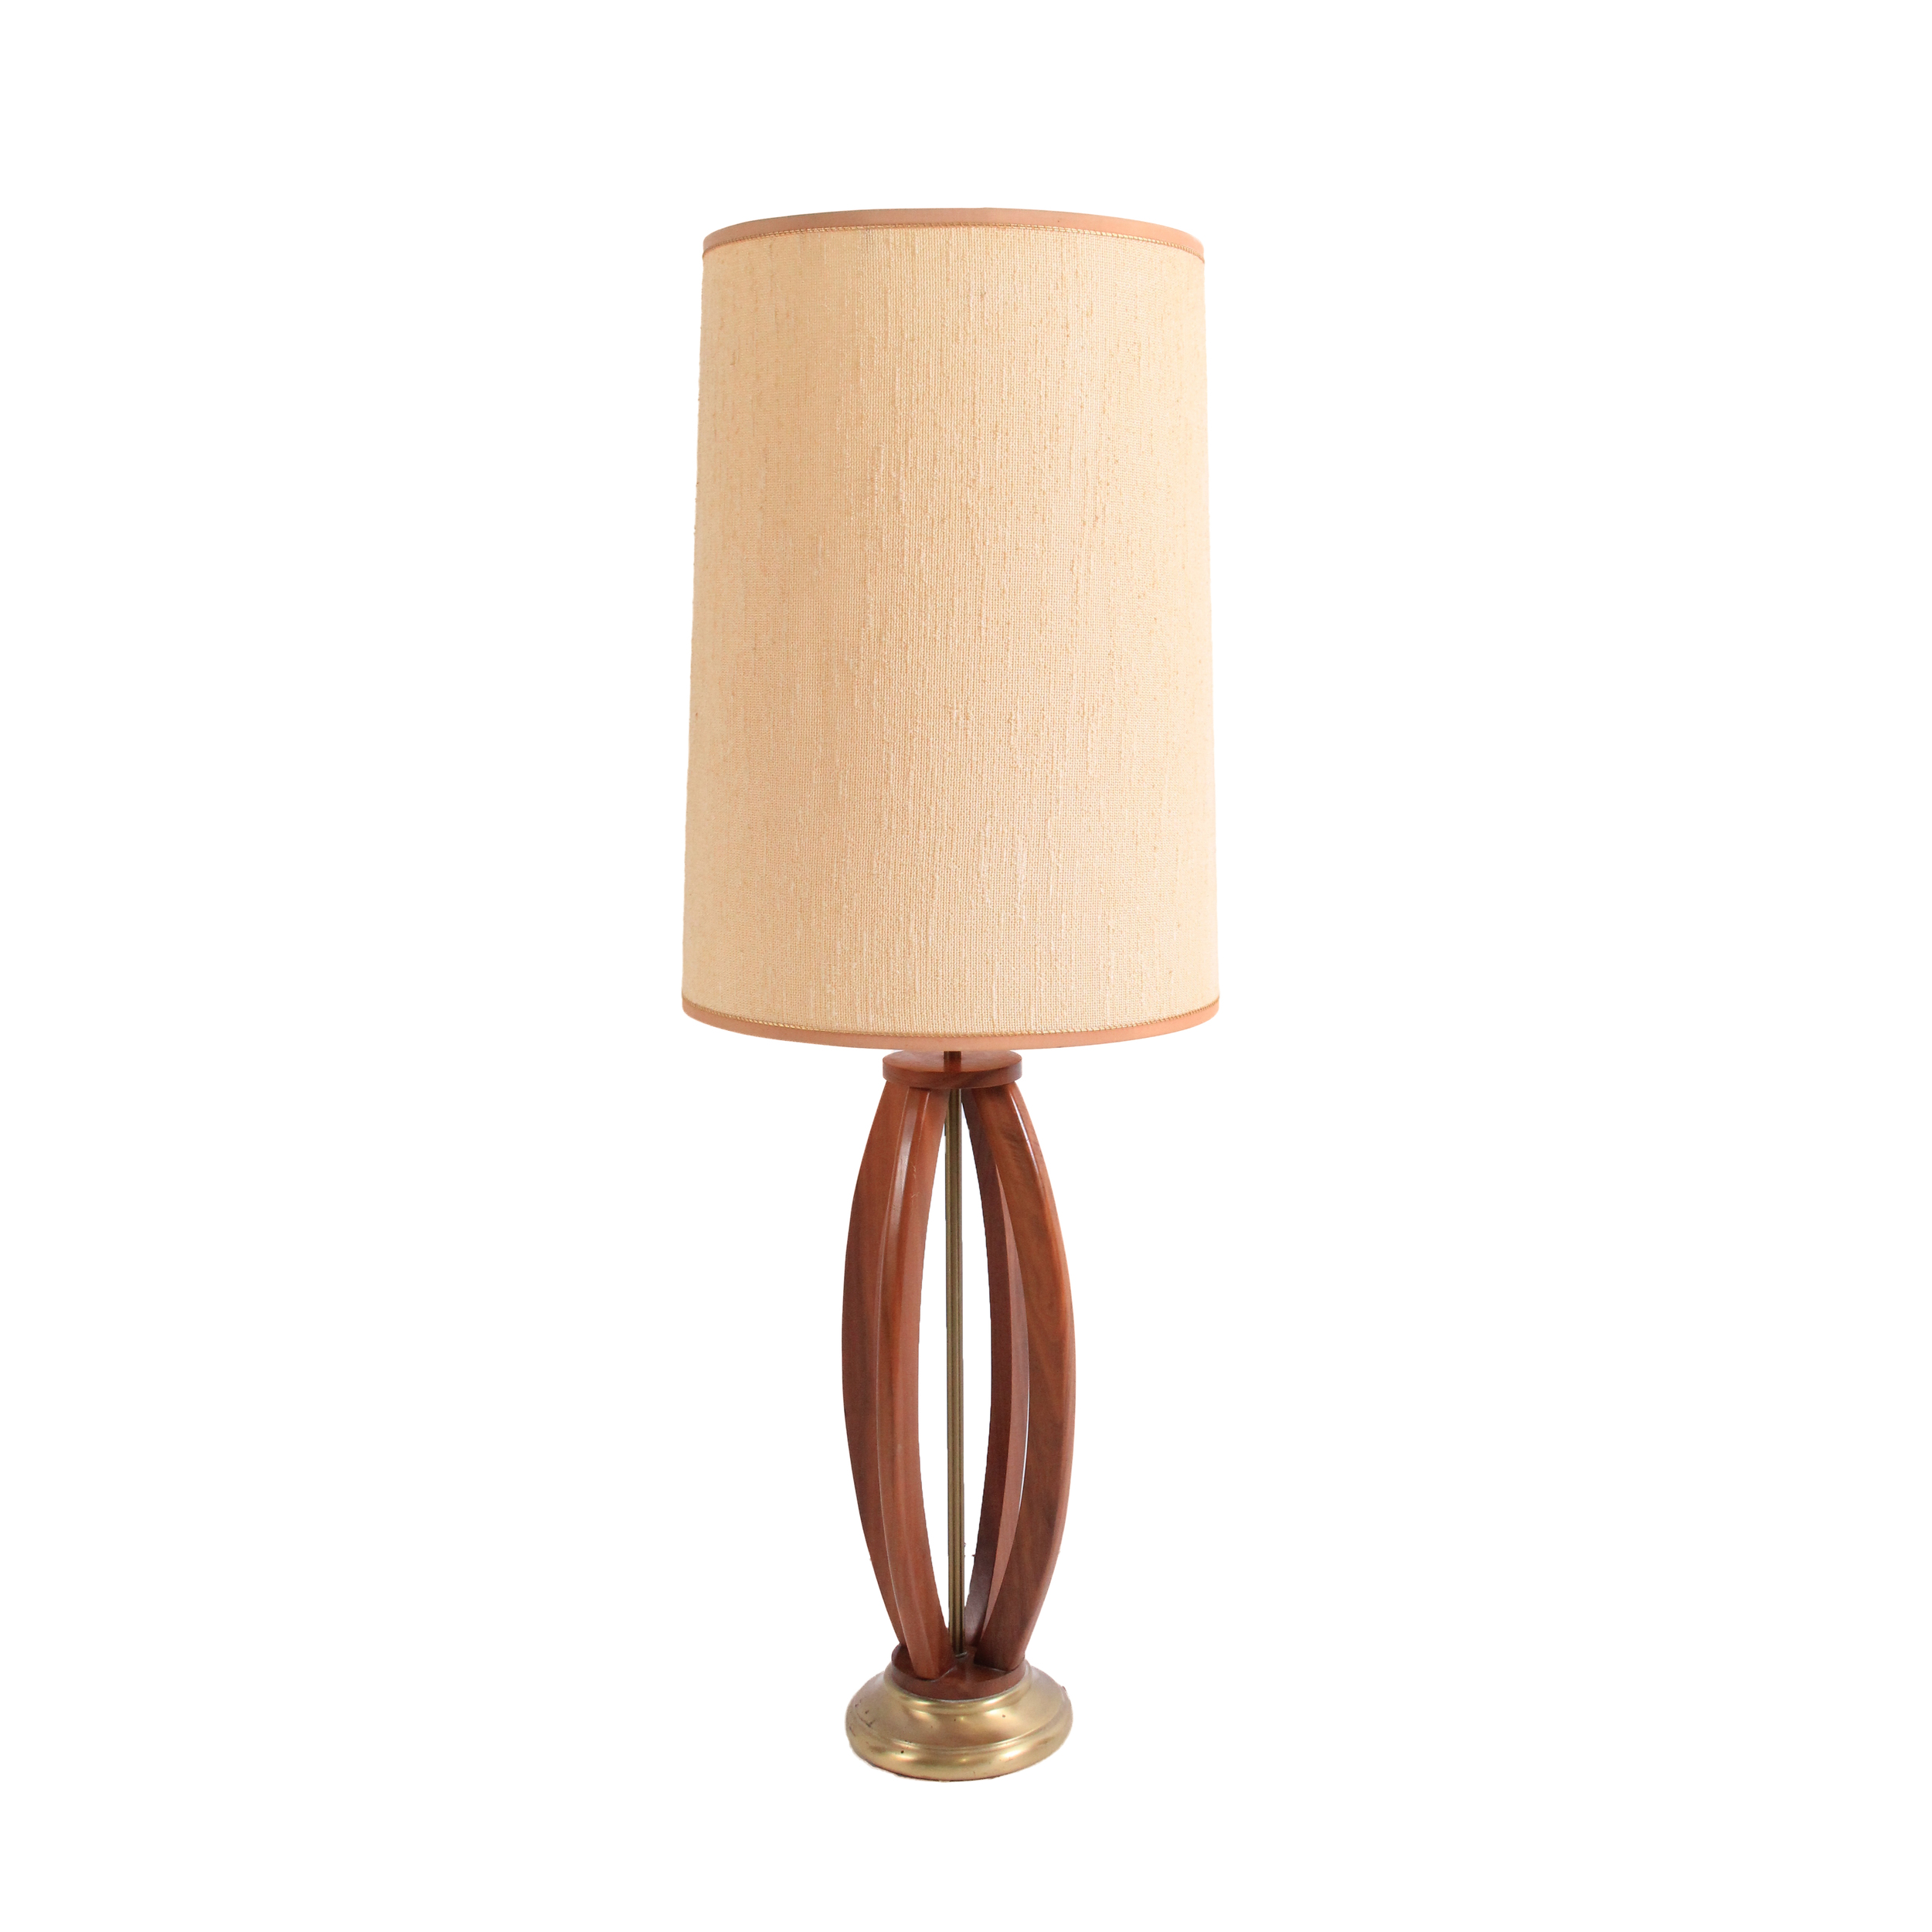 Vintage Mid Century Modern Table Lamp